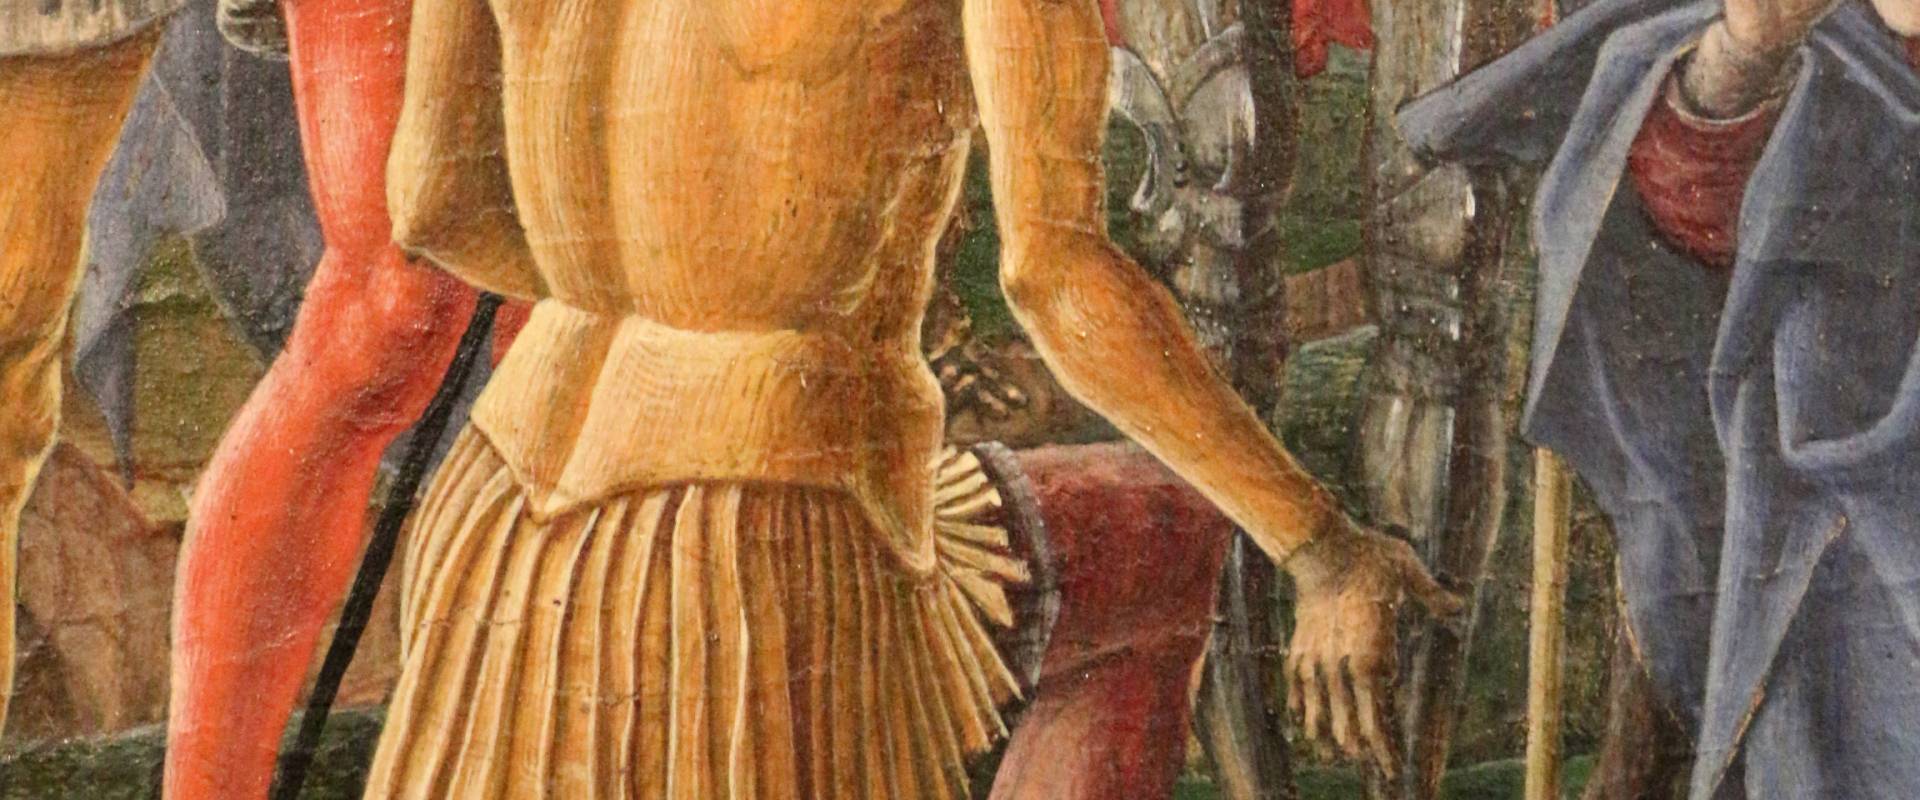 Cosmè tura, martirio di san maurelio, 1480, da s. giorgio a ferrara, 05 foto di Sailko